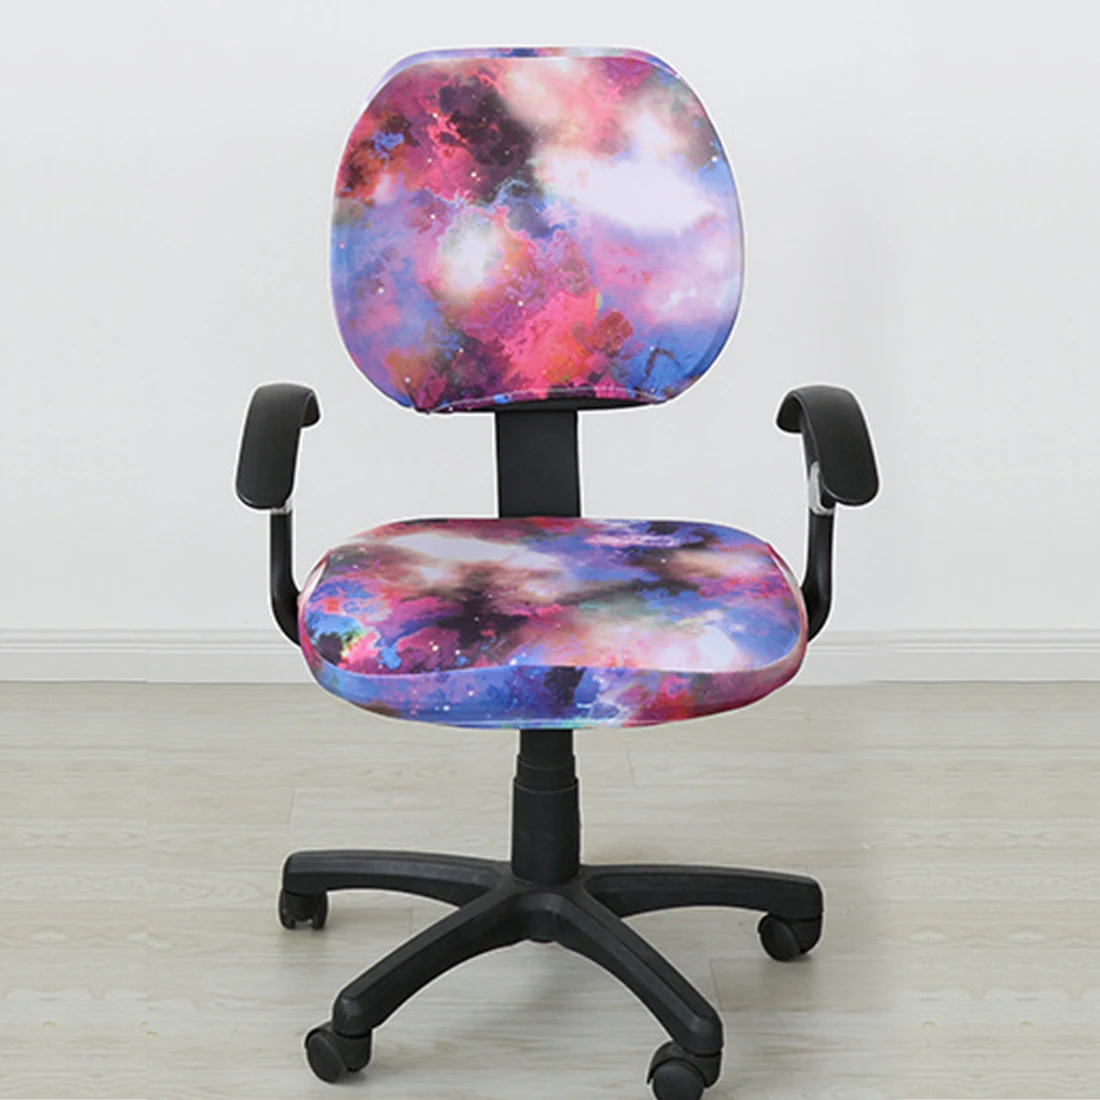 Хорошее качество эластичная ткань спандекс чехлы на сиденья для компьютерных стульев офисное кресло игровое кресло легко моющееся съемное - Цвет: 2